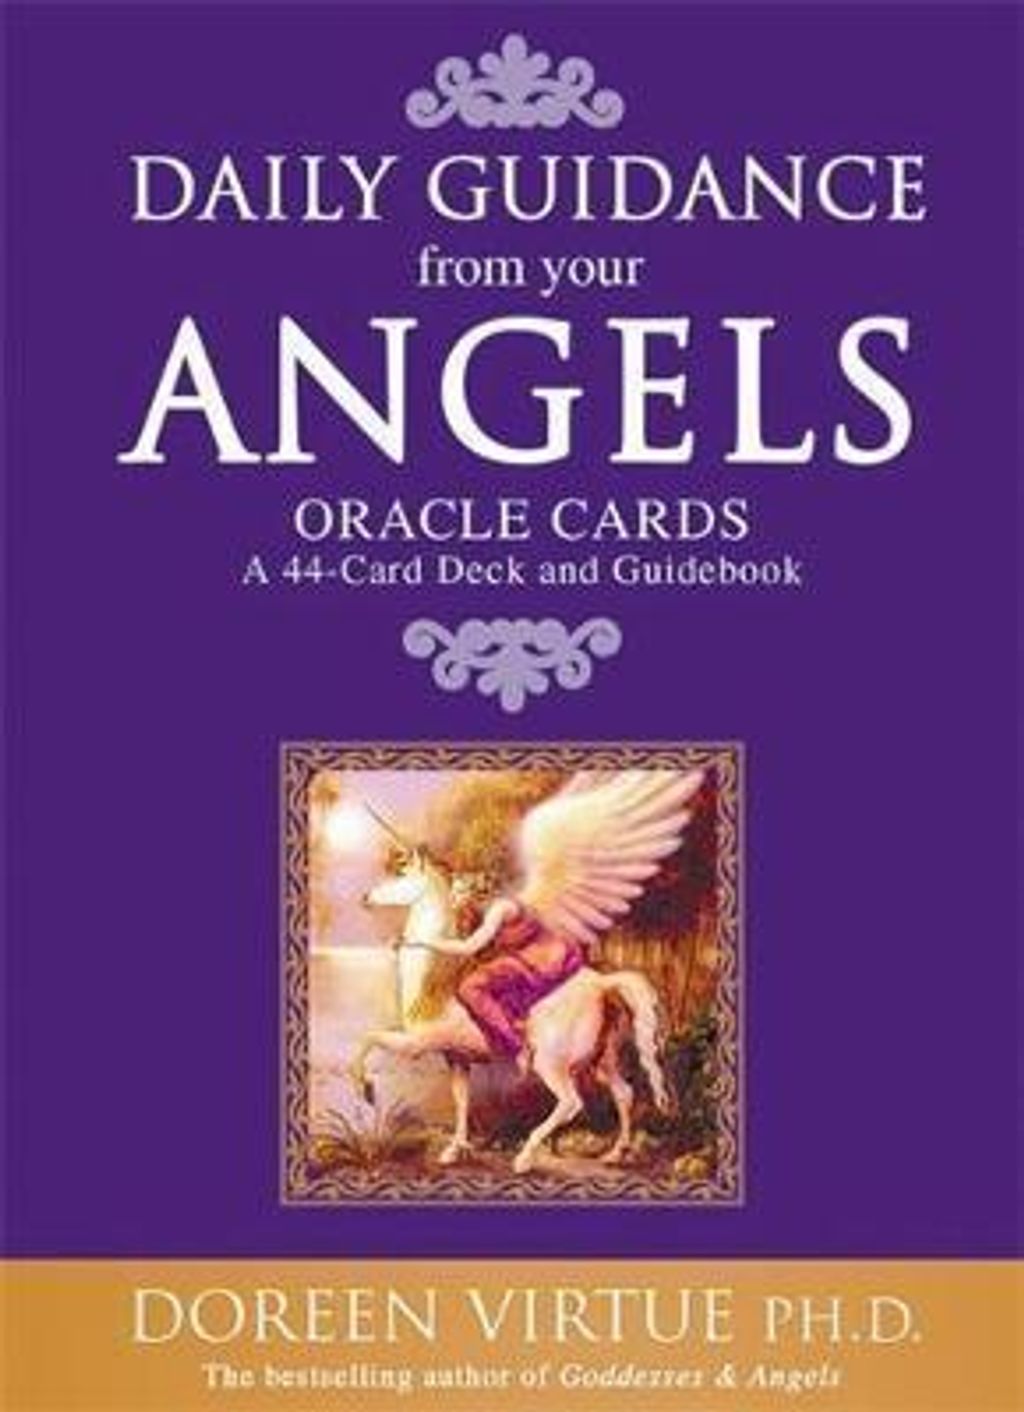 守護天使指引卡 英文版：Daily Guidance From Your Angels Oracle Cards.jpg